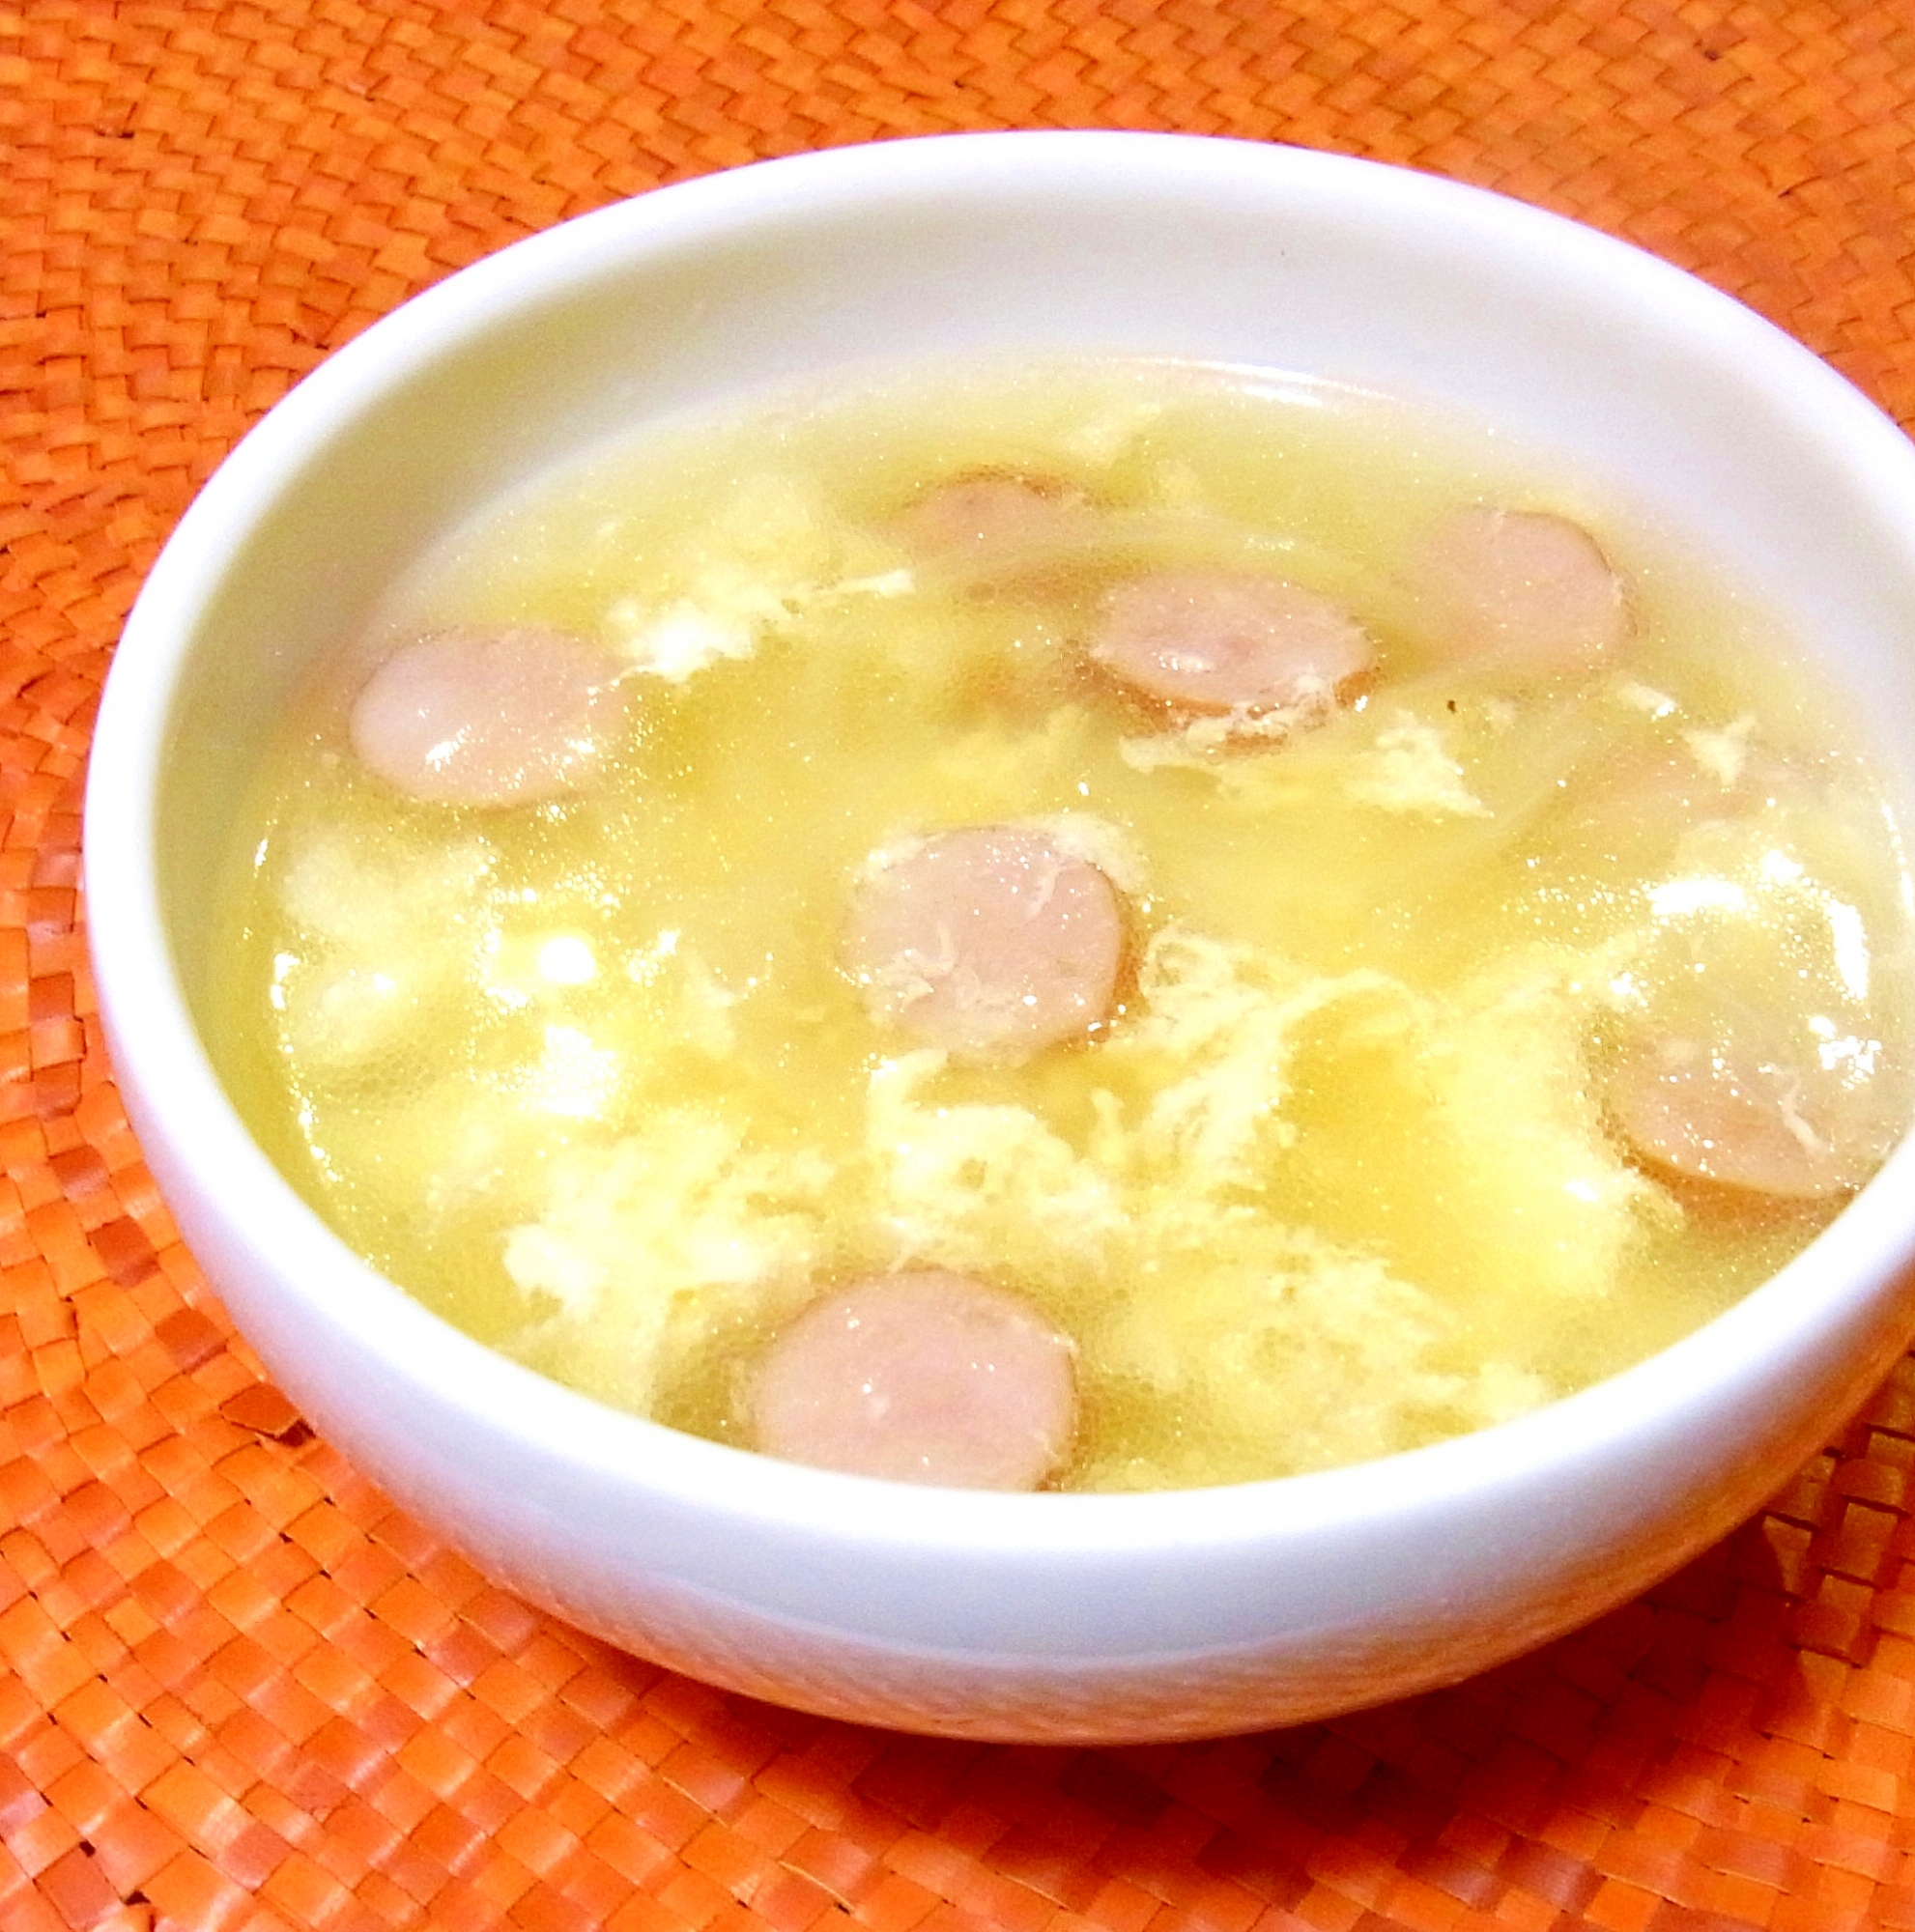 ウインナーと卵のスープが白い皿に盛り付けられているところ